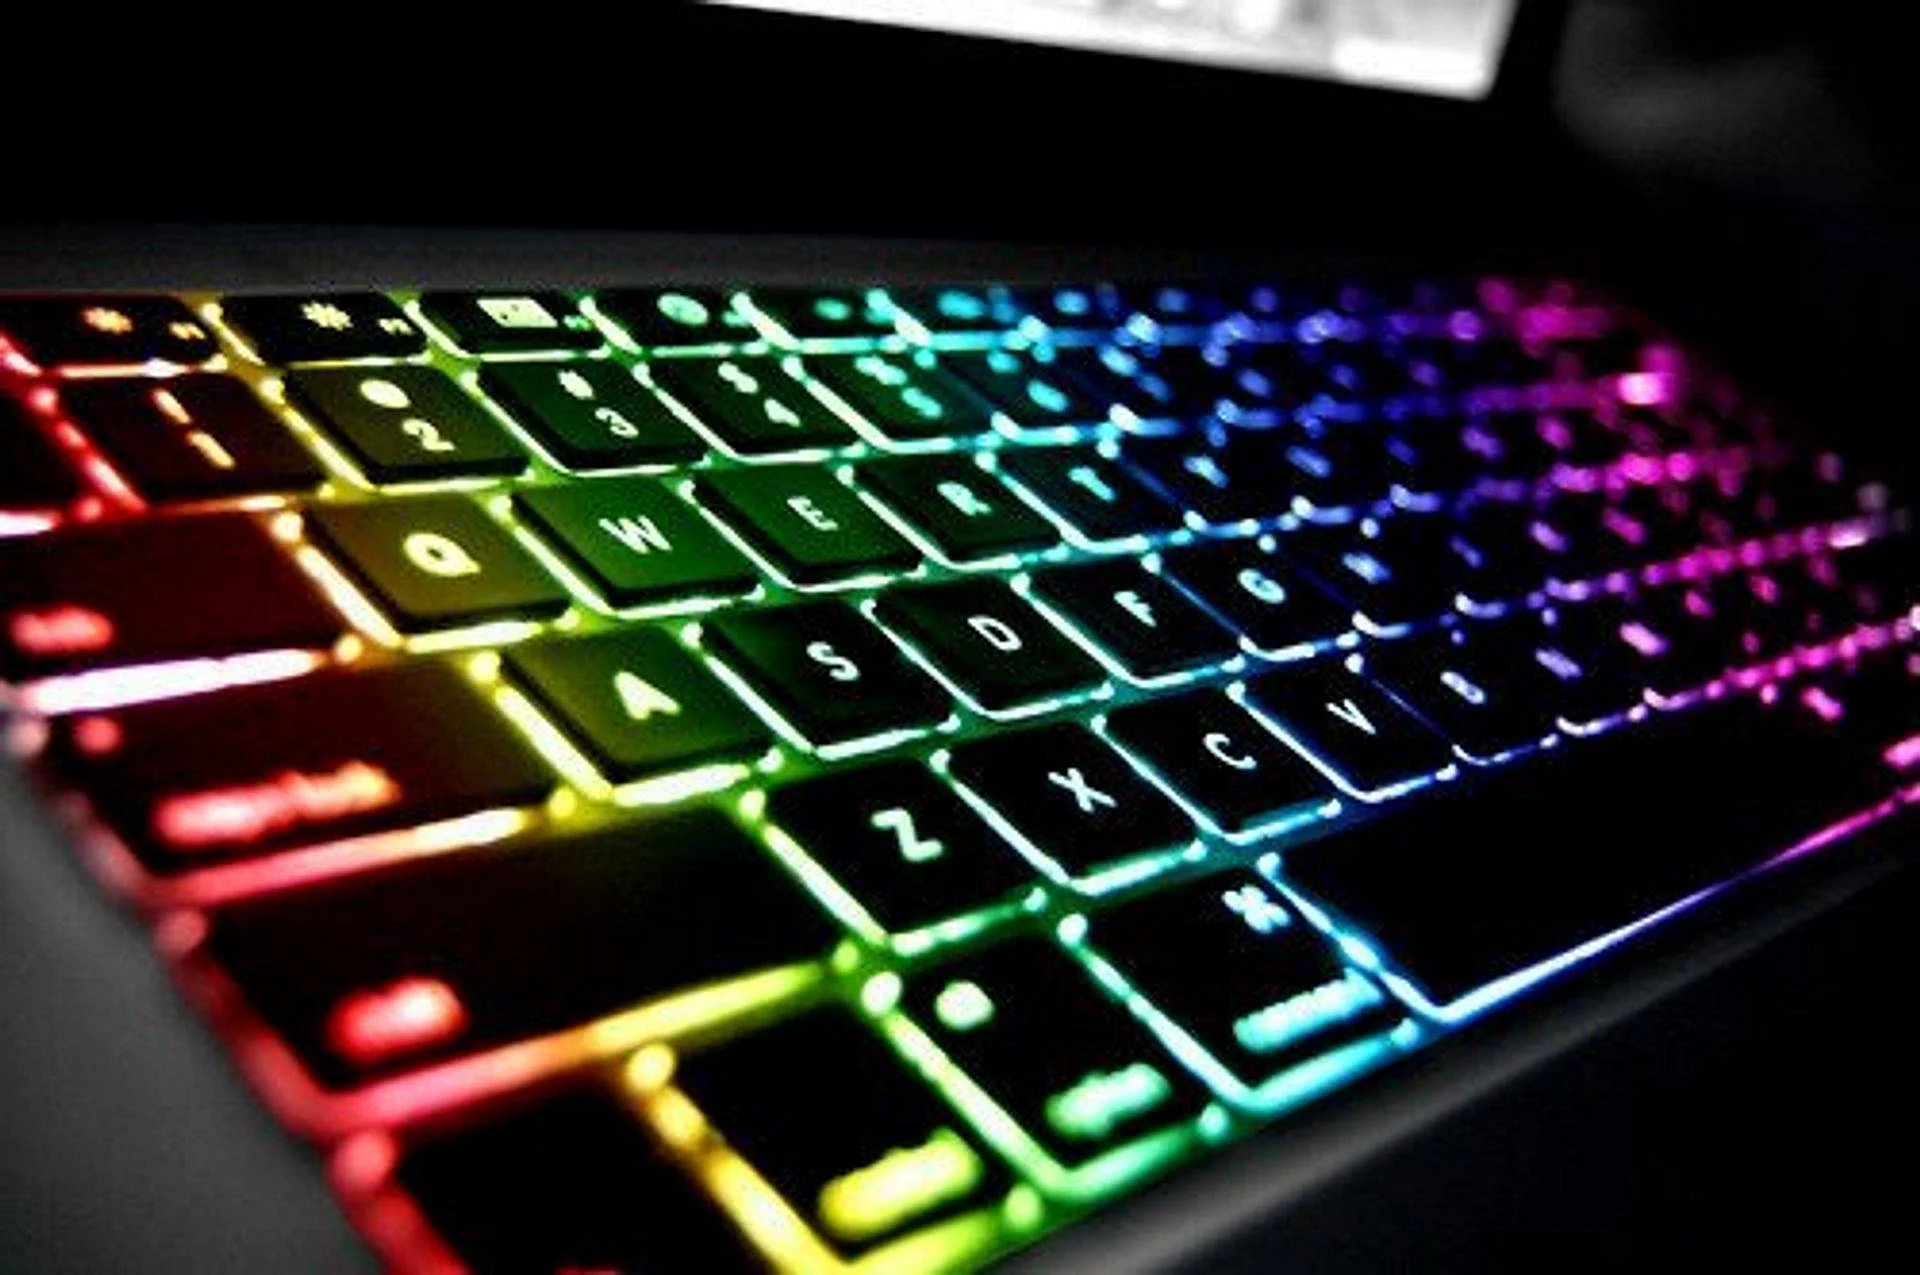 Цветная клавиатура